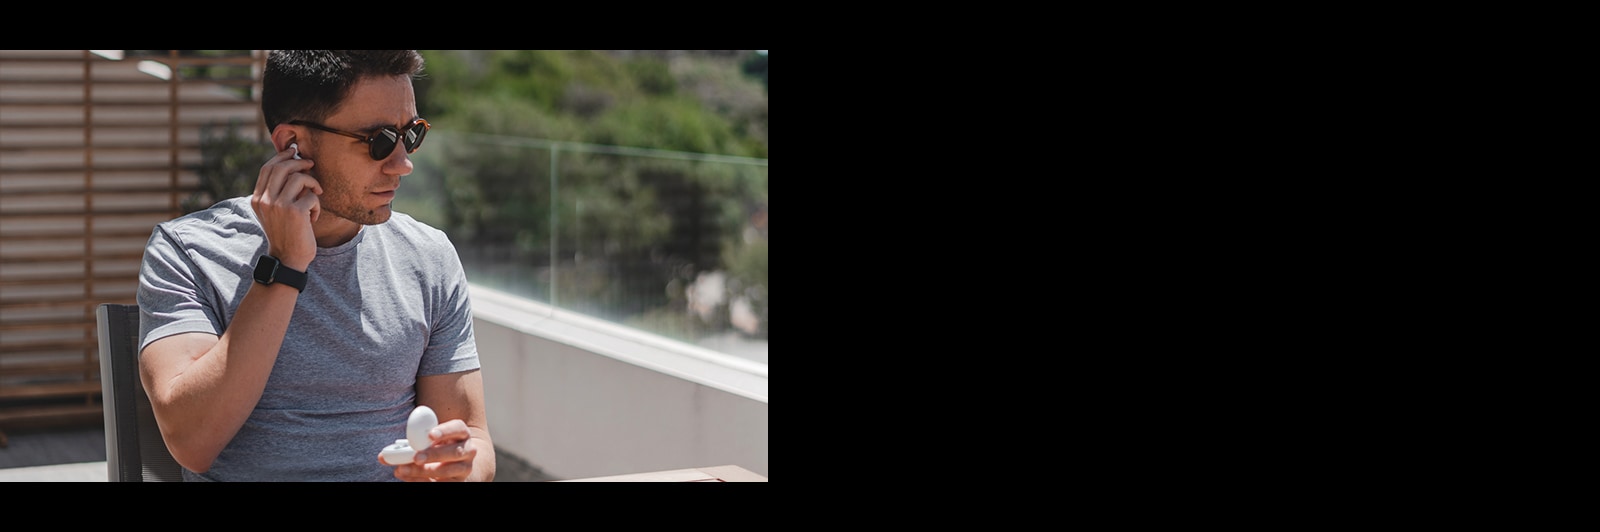 Изображение человека в темных очках, вынимающего вкладыш из уха на балконе при дневном свете